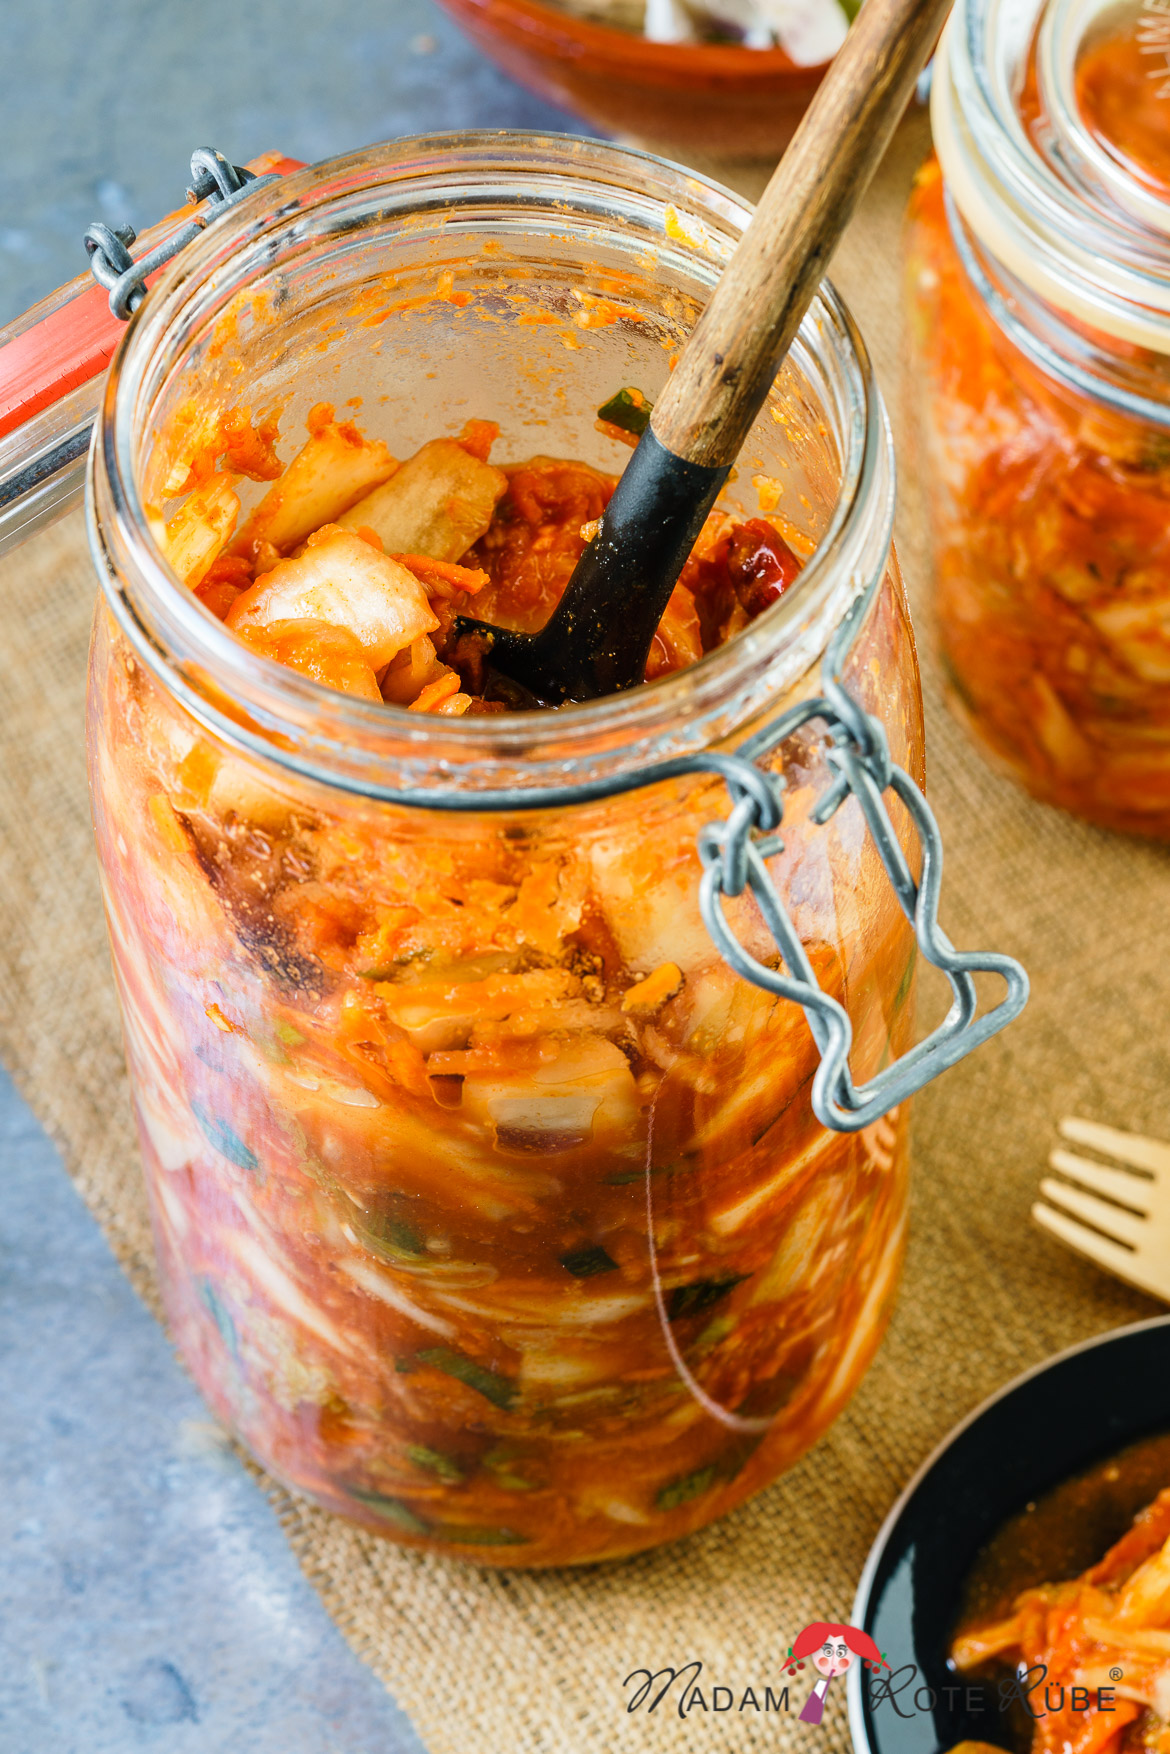 Madam Rote Rübe - Kimchi - milchsauer eingelegter Chinakohl mit Möhren und Rettich